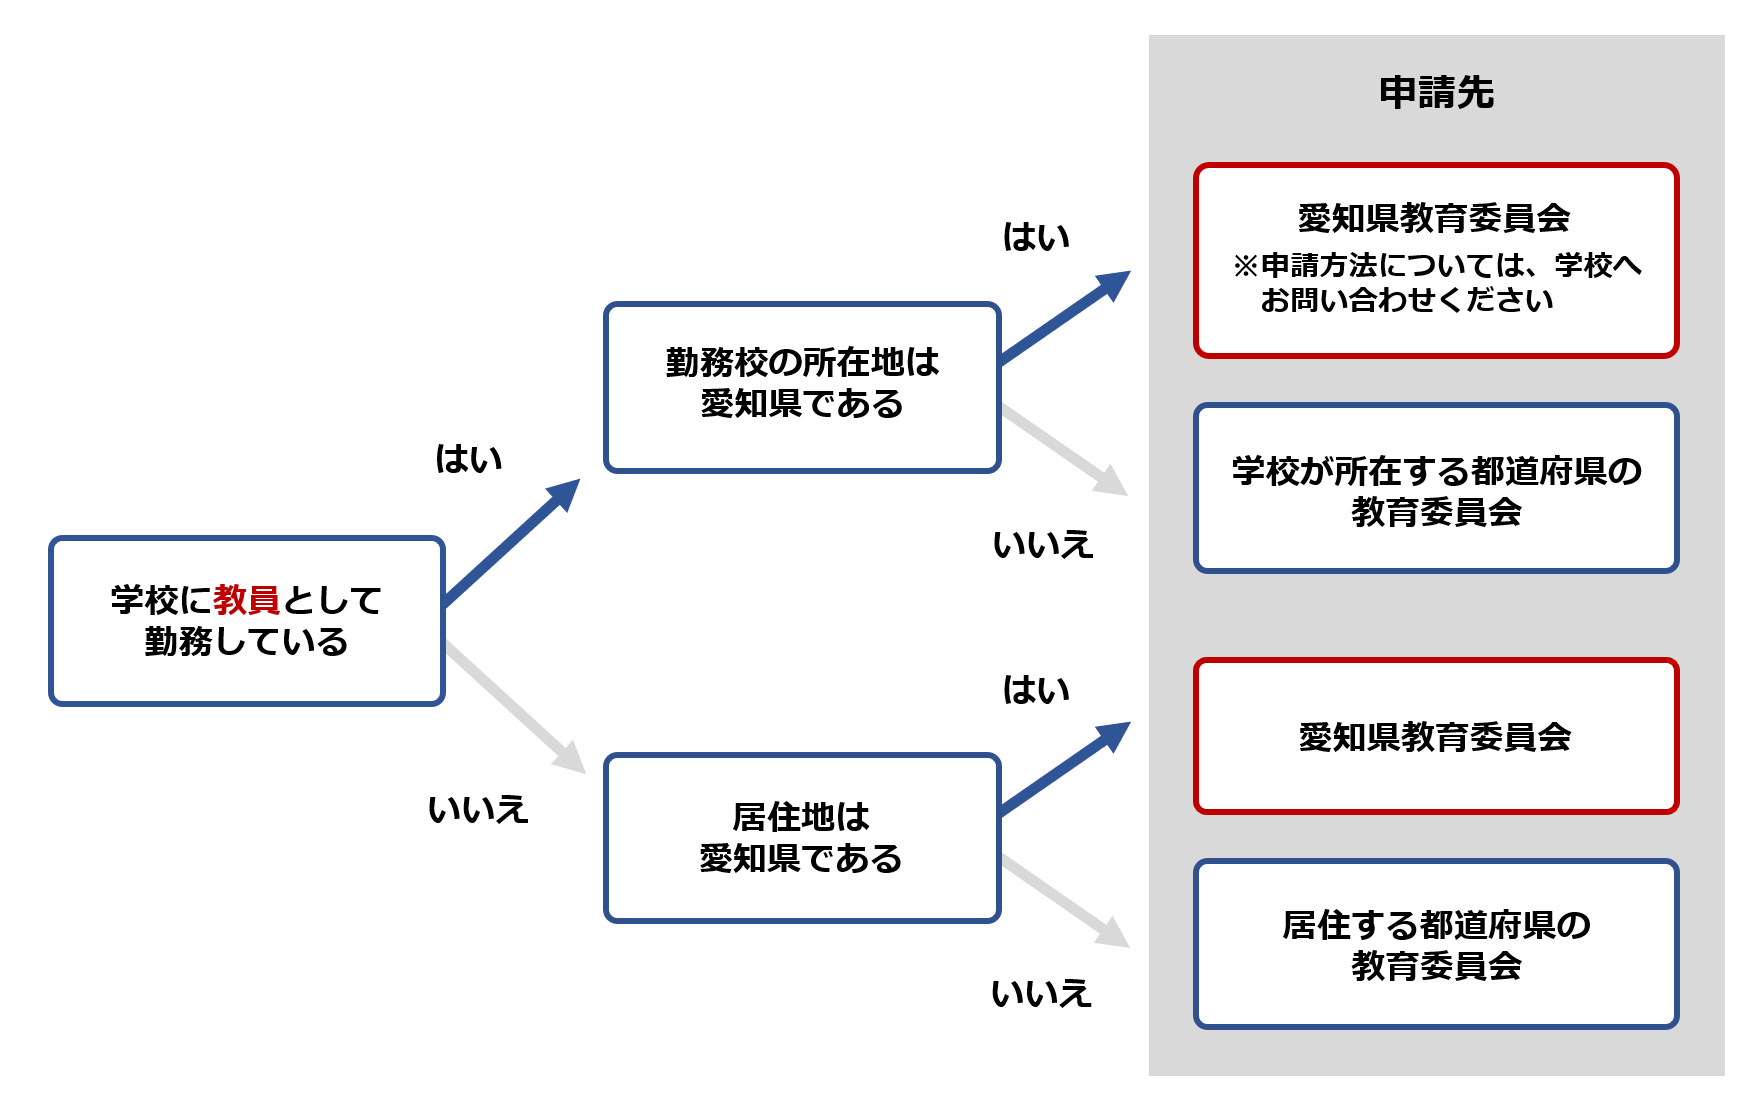 現在愛知県の学校に教員として勤務されている方、現在教員ではなく居住地が愛知県の方は、愛知県教育委員会が申請先となります。